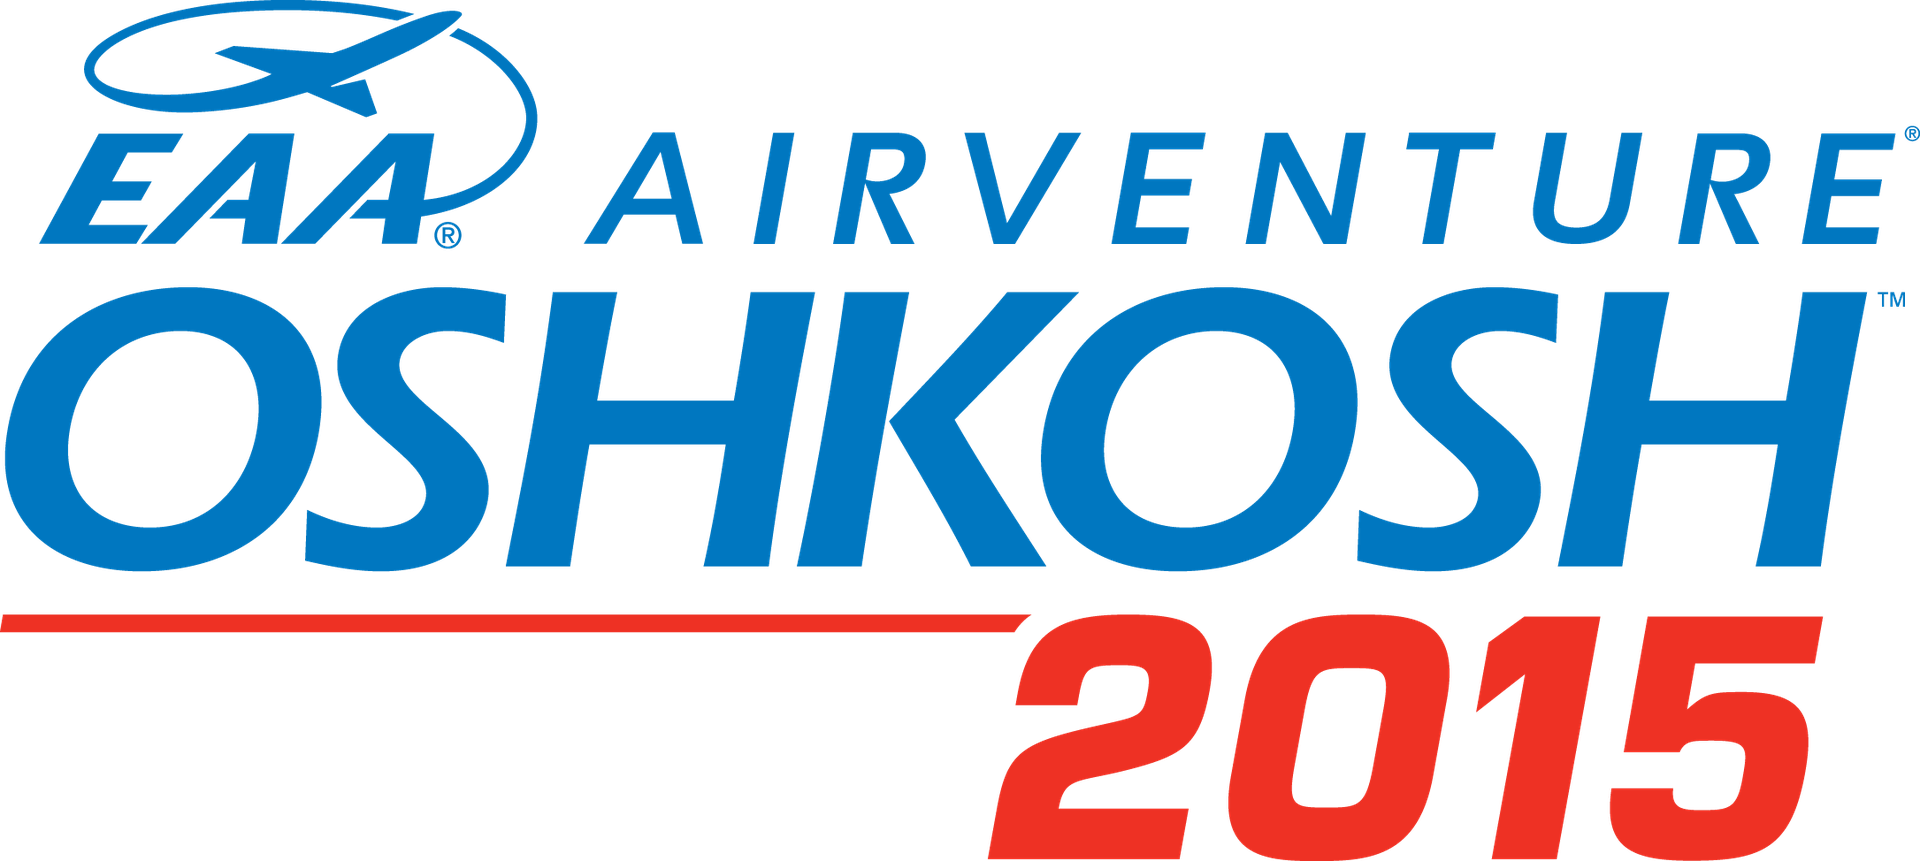 AirVenture OSHKOSH 2015